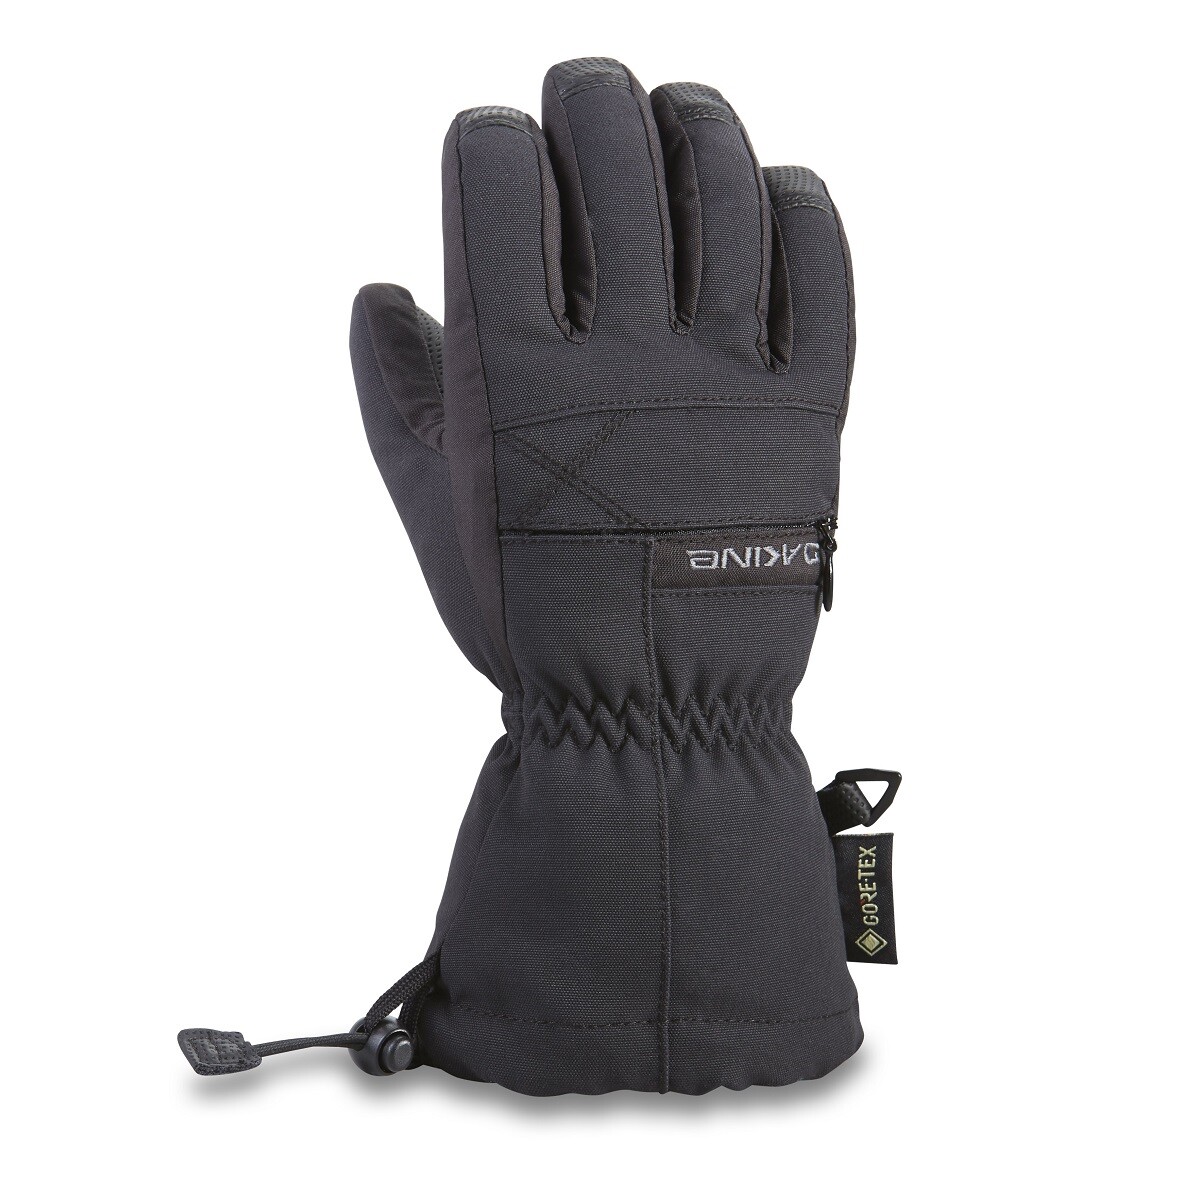 Dakine Avenger Gore-tex kinder handschoenen black